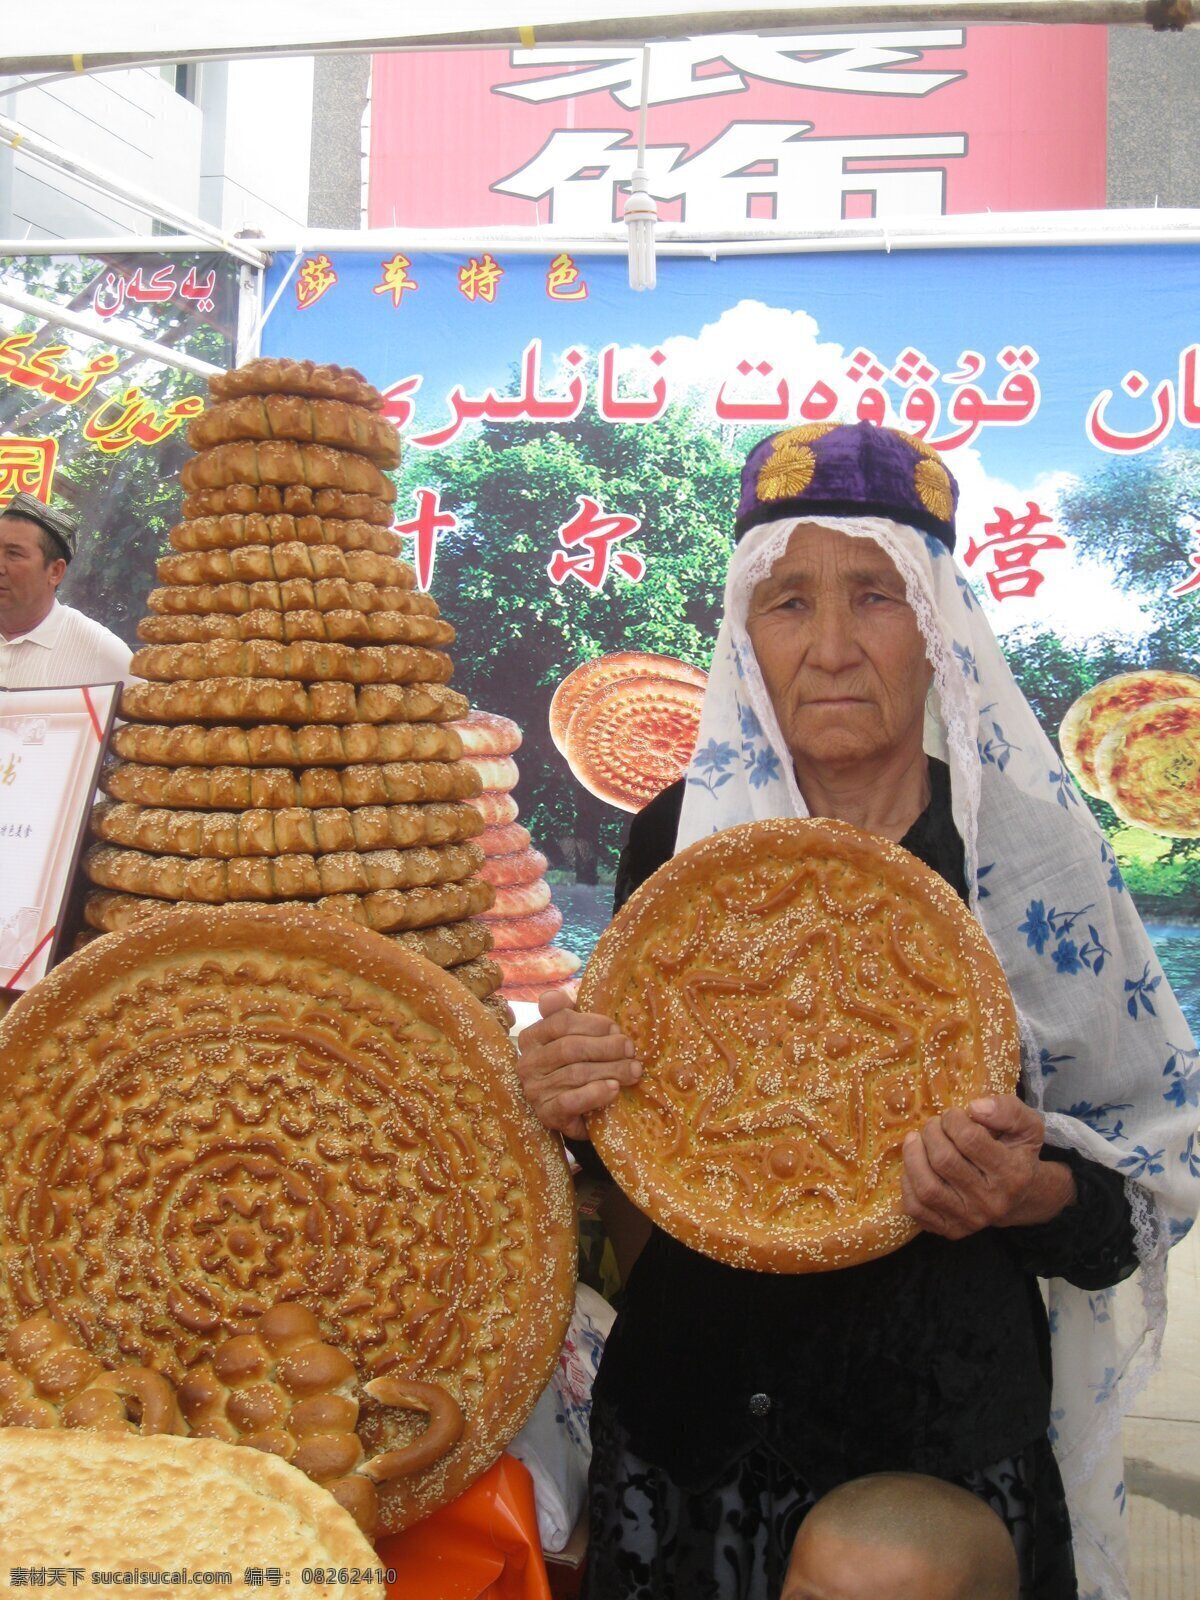 喀什大巴扎 喀什 馕 民族食品 大巴扎 中西亚 国际贸易 市场 东门大巴扎 生活素材 生活百科